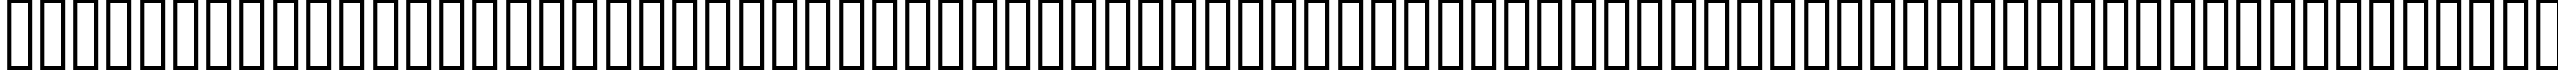 Пример написания английского алфавита шрифтом ALIBI